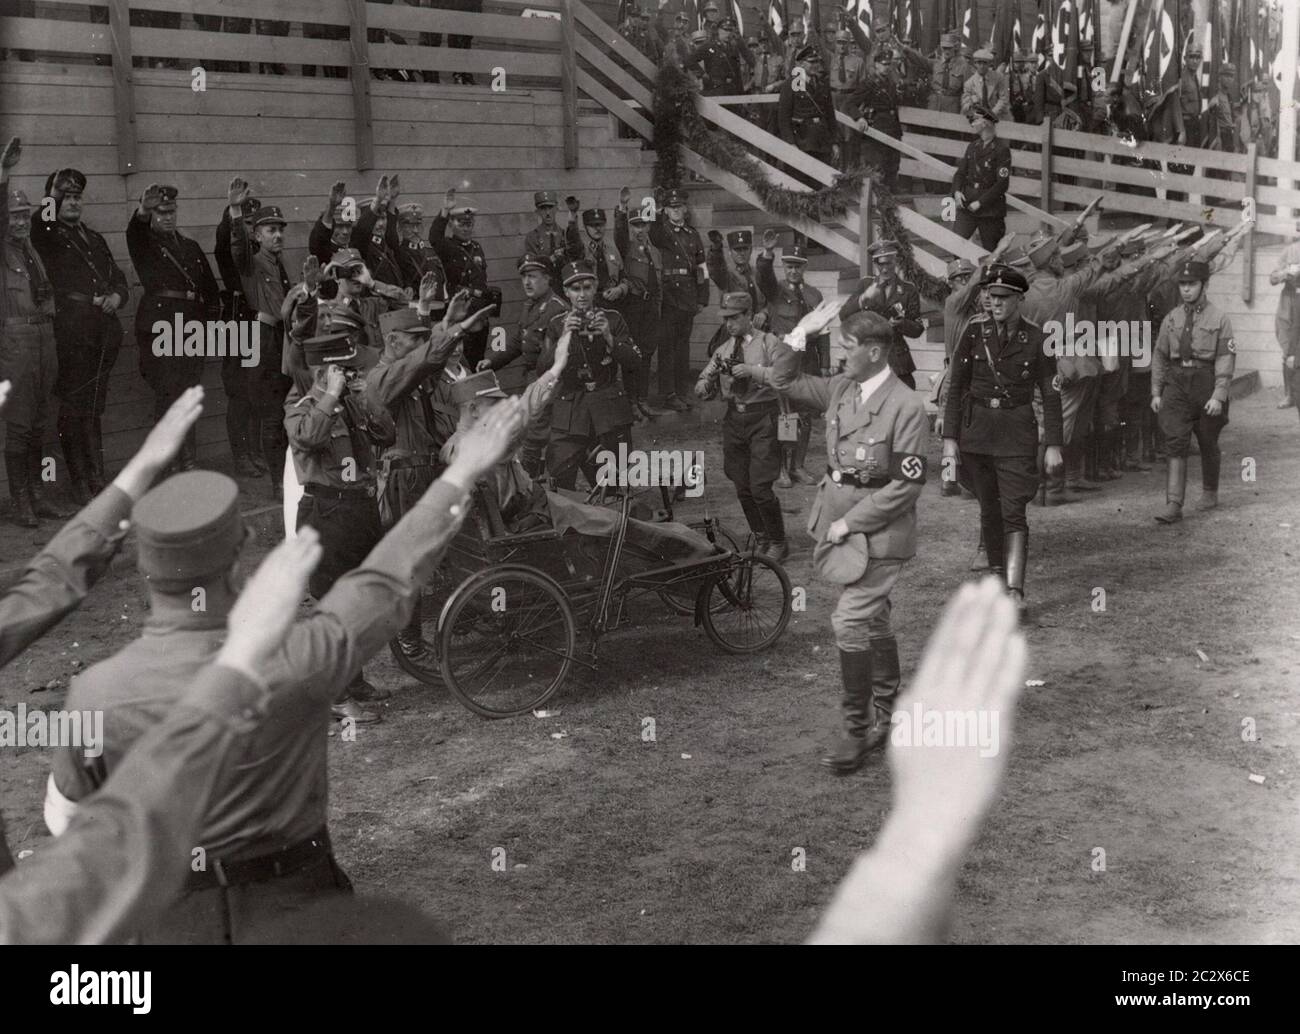 Photos du rassemblement du Parti nazi à Nuremberg 1933 - Hitler Heinrich Hoffmann photographies 1933 photographe officiel d'Adolf Hitler, et un homme politique et éditeur nazi, qui était membre du cercle intime d'Hitler. Banque D'Images